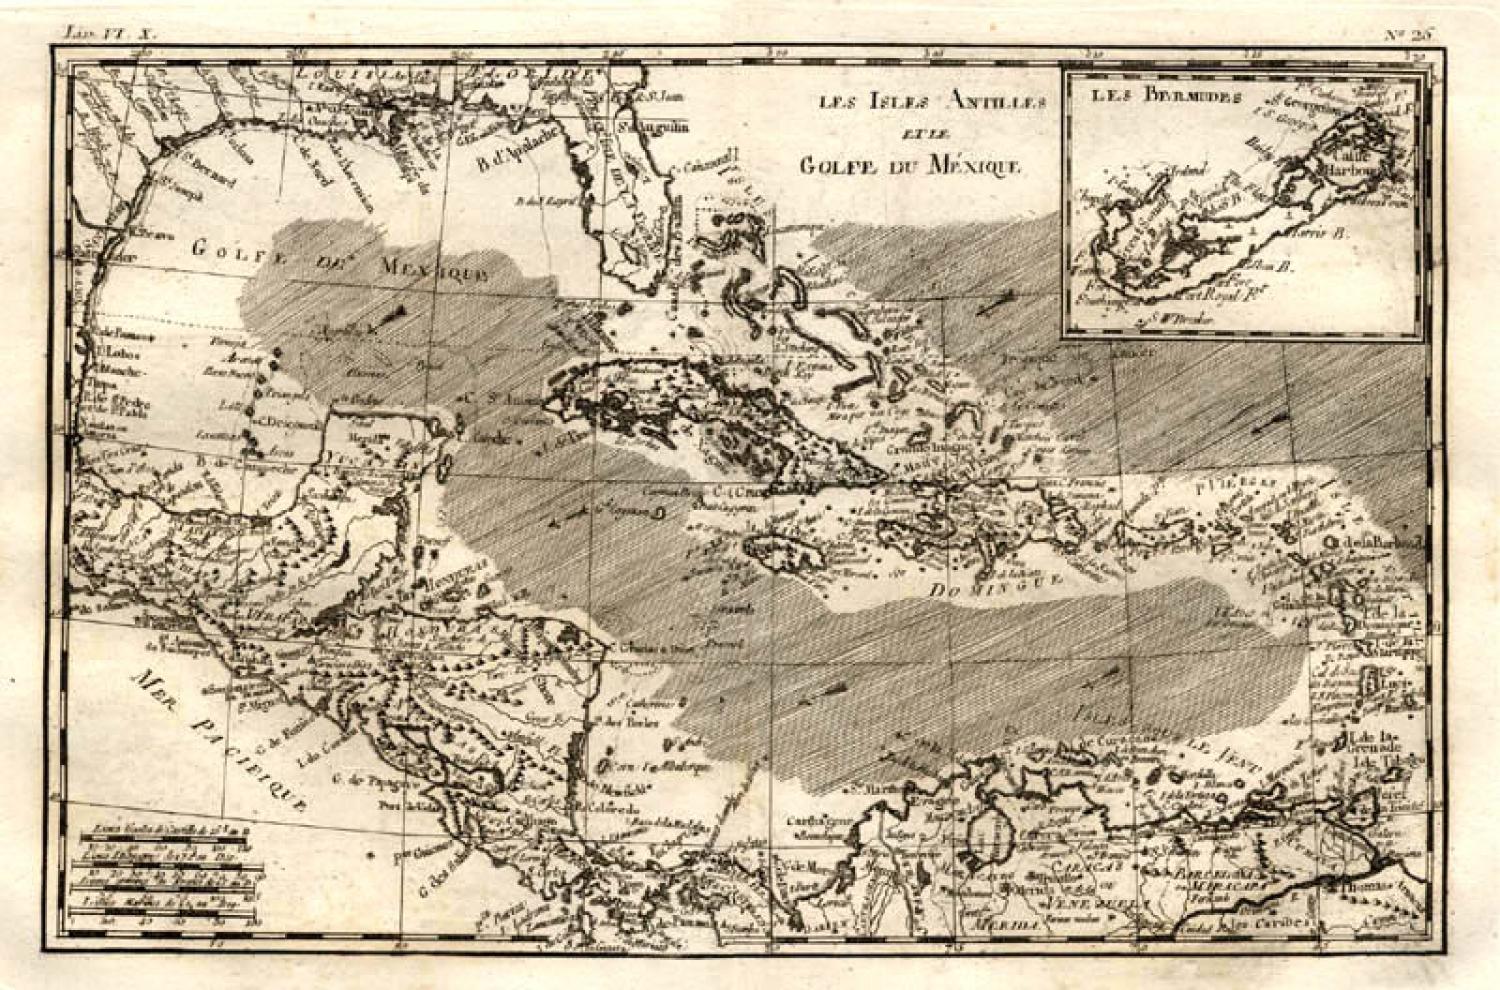 Bonne - Isles Antilles et le Golfe du Mexique